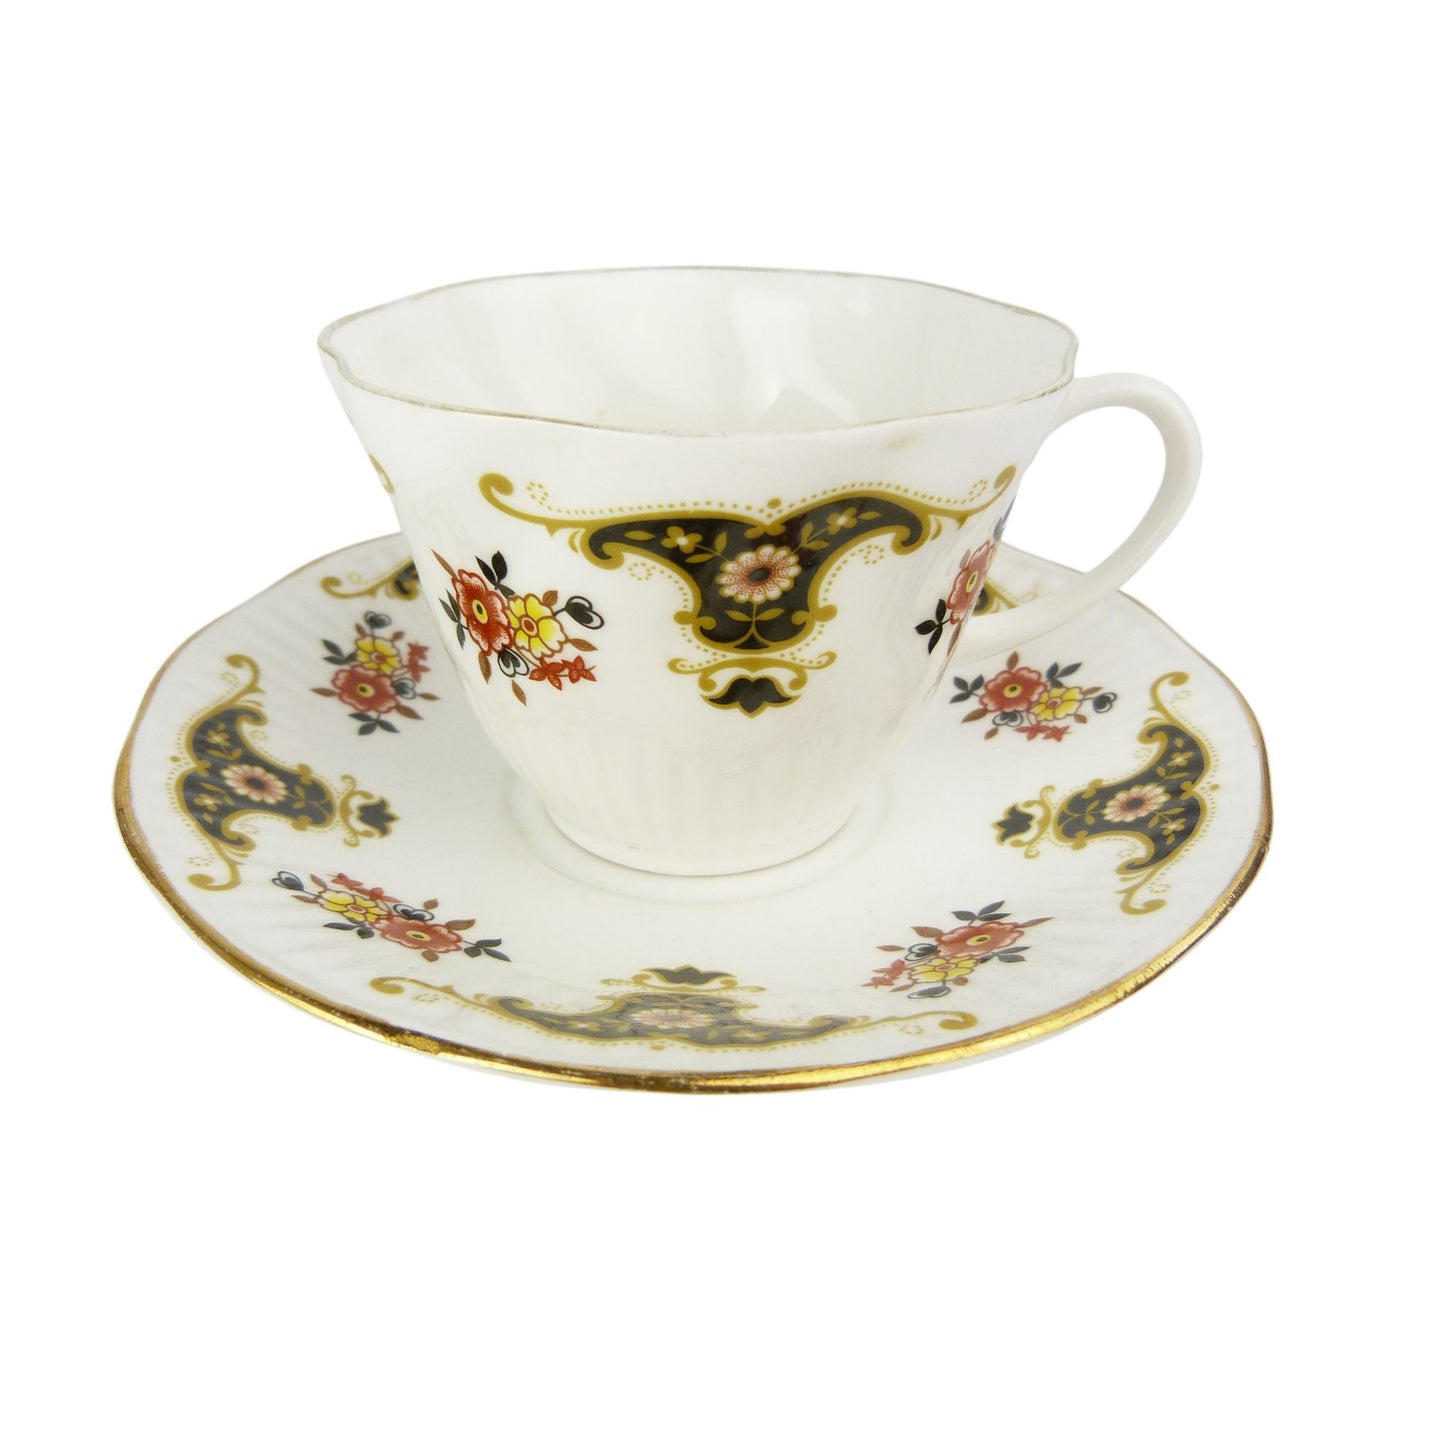 Vintage Royal Stafford Bone China Balmoral Tea Cup & Saucer